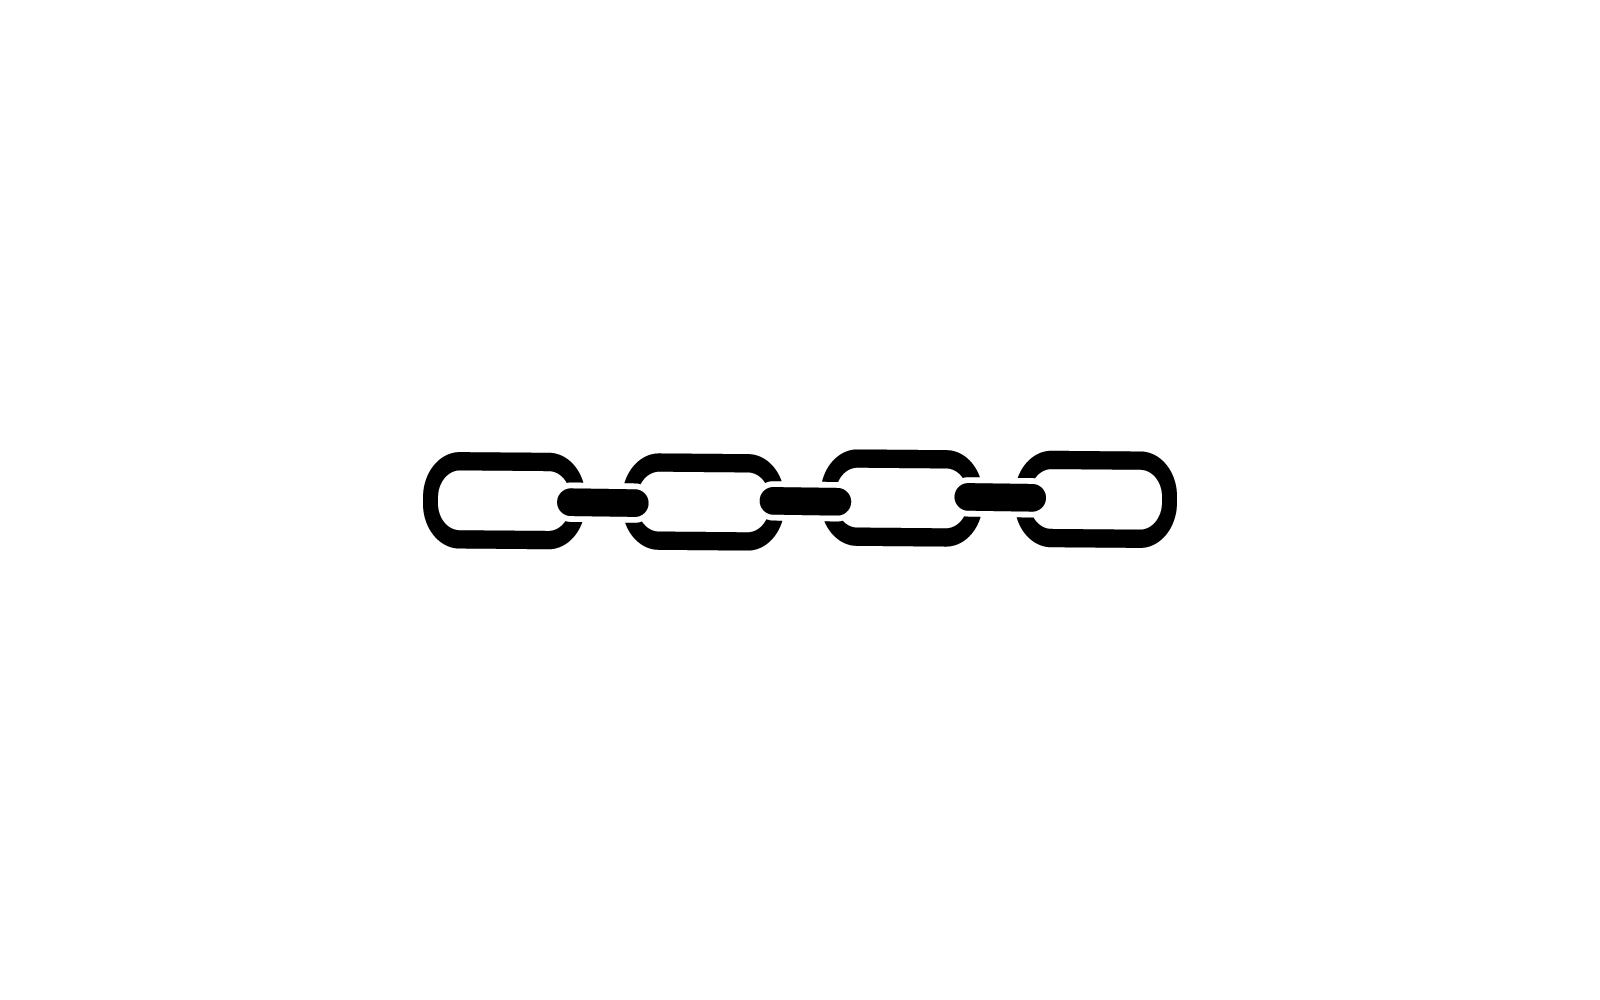 chain design logo vector icon illustration template